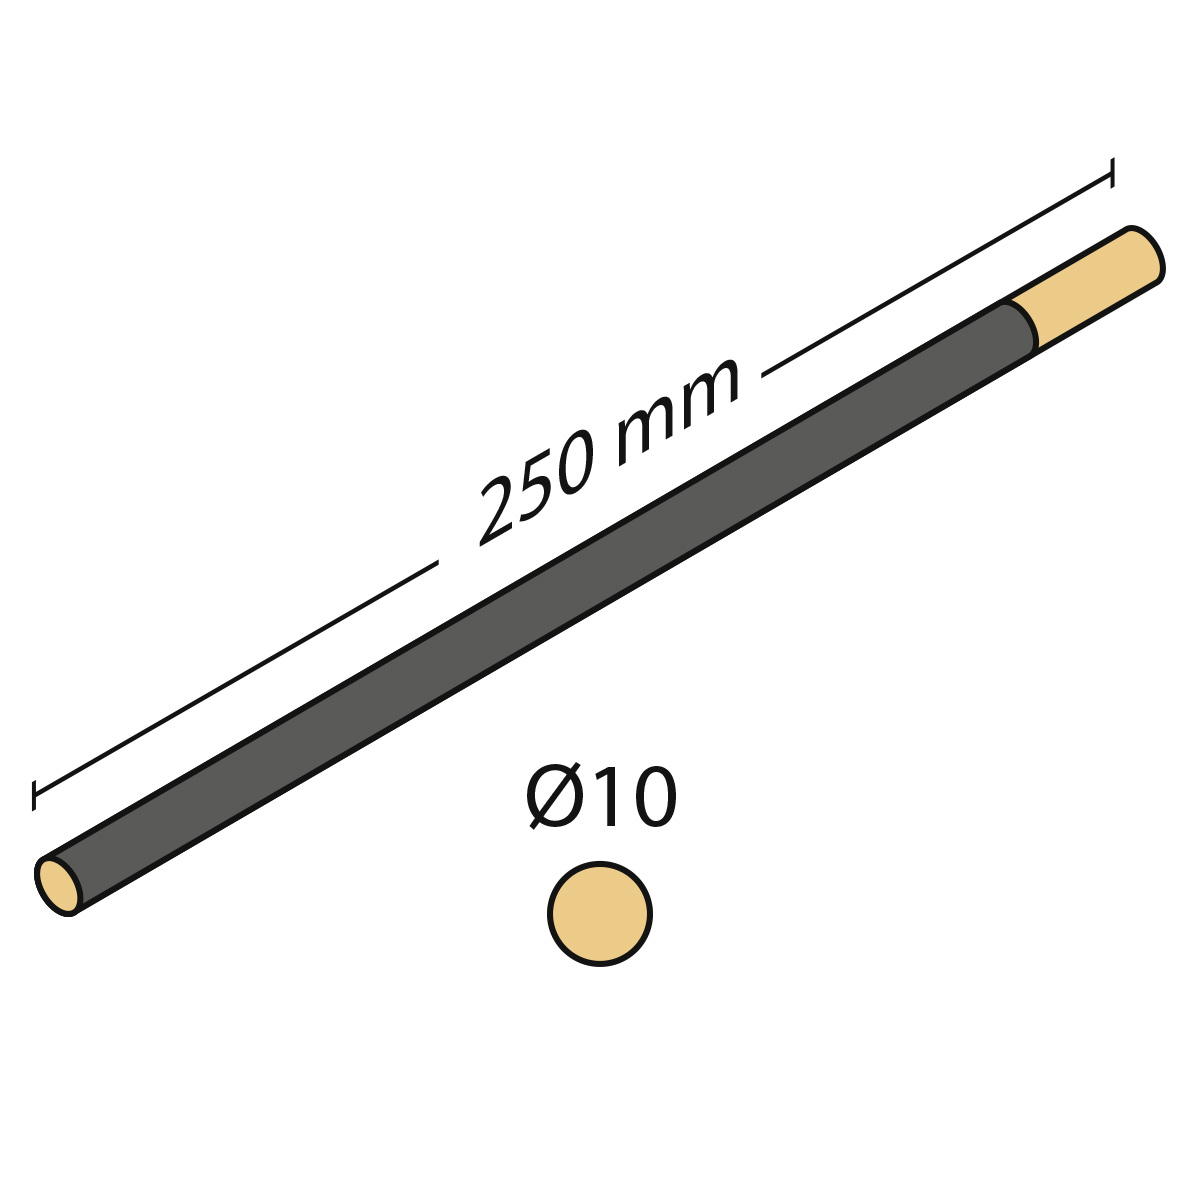 Cabron d'émeri rond, longueur 250 mm, Ø 10 mm, très fin, grain 240